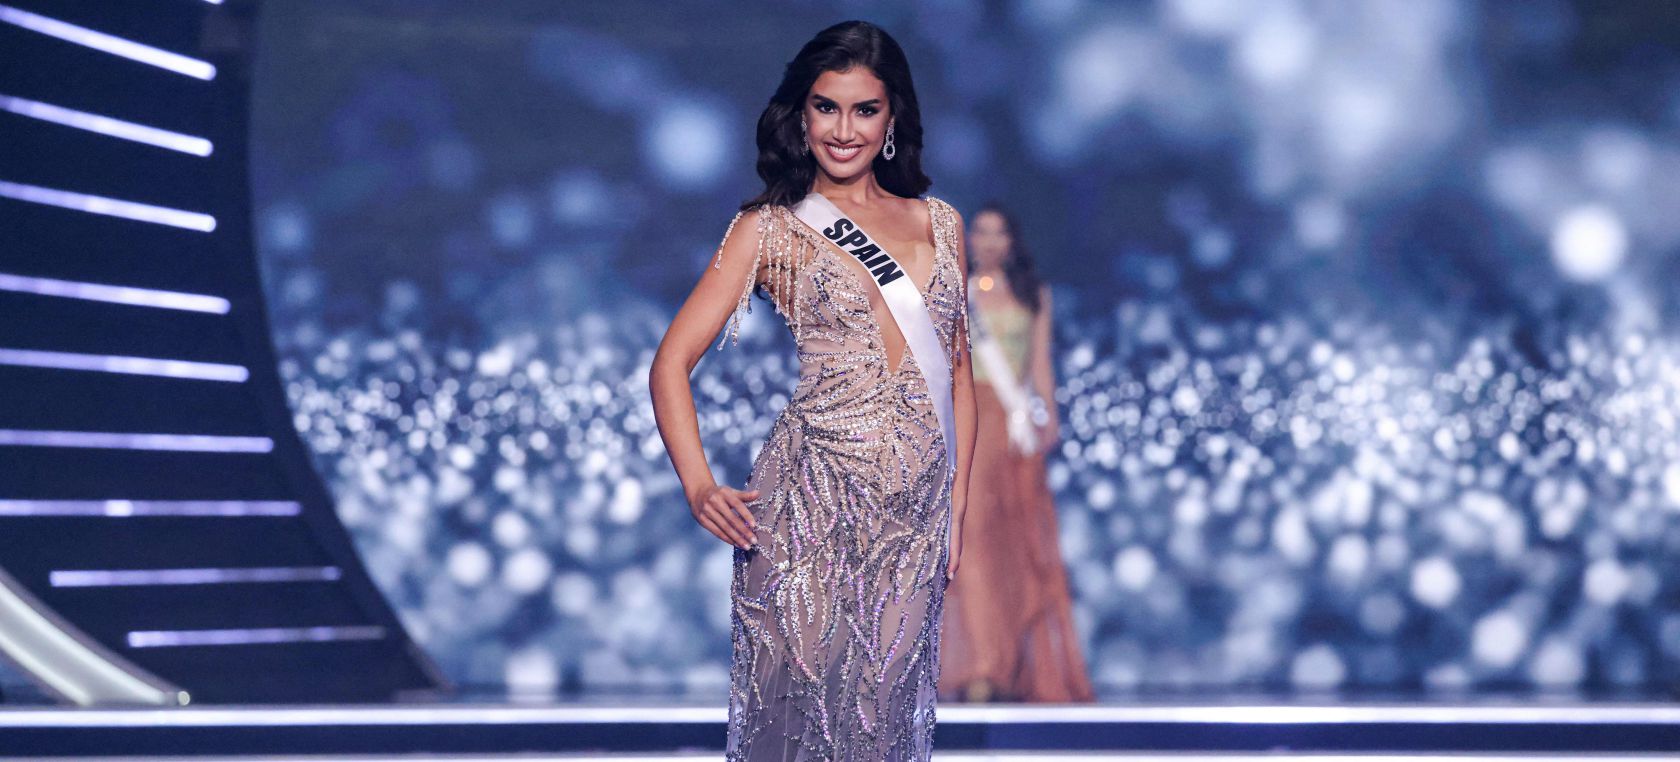 La representante española de Miss Universo, Sarah Loinaz, homenajea a La Palma con su vestido